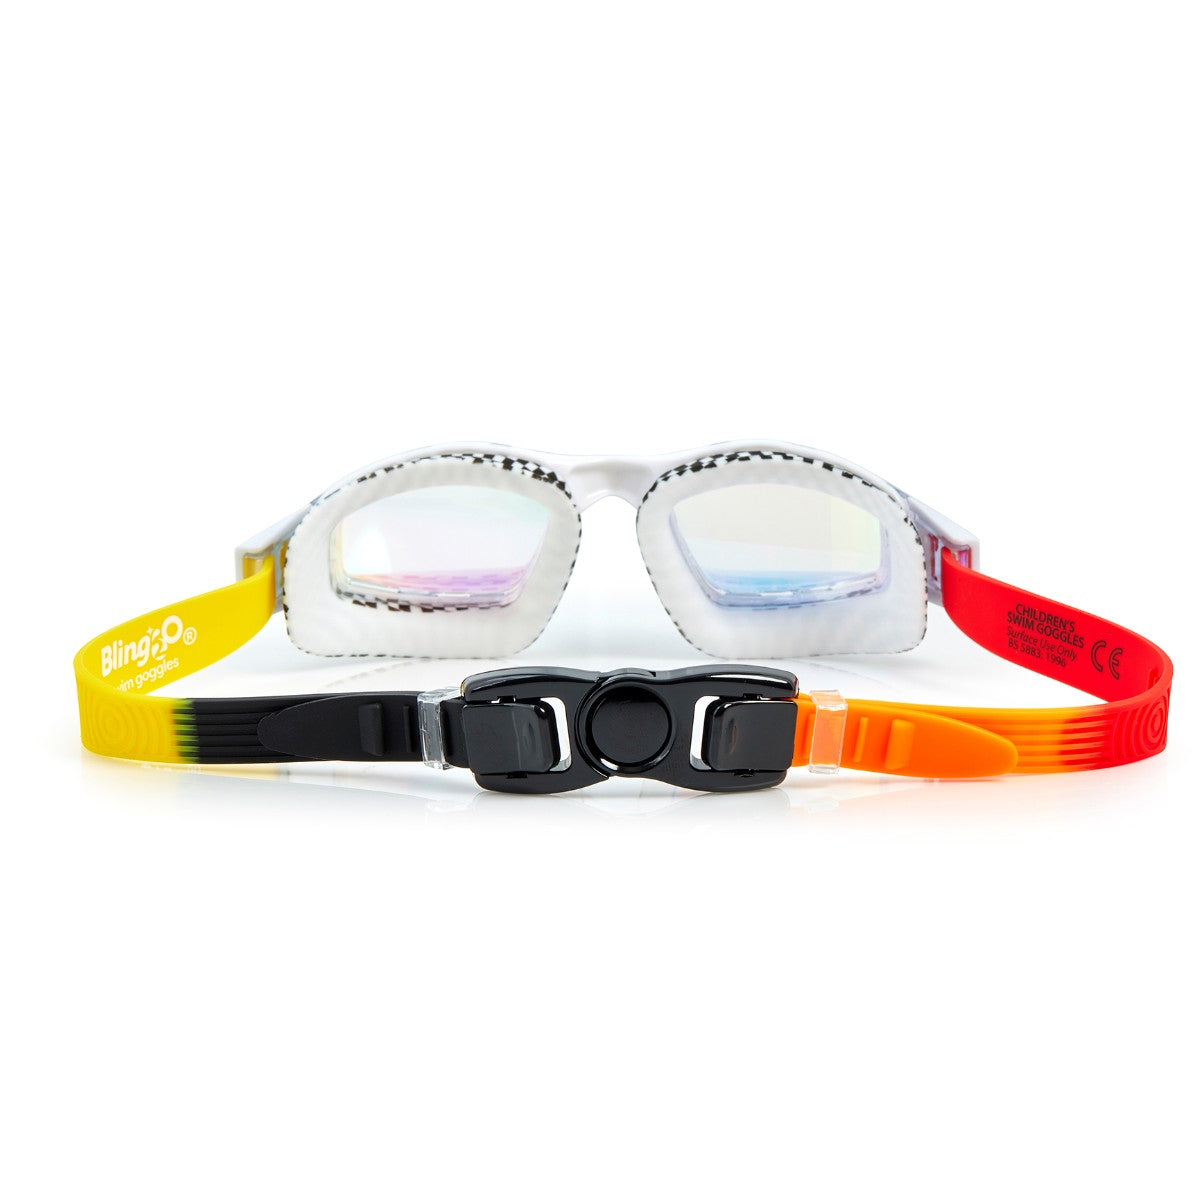 Bling2O svømmebriller, Street Vibe